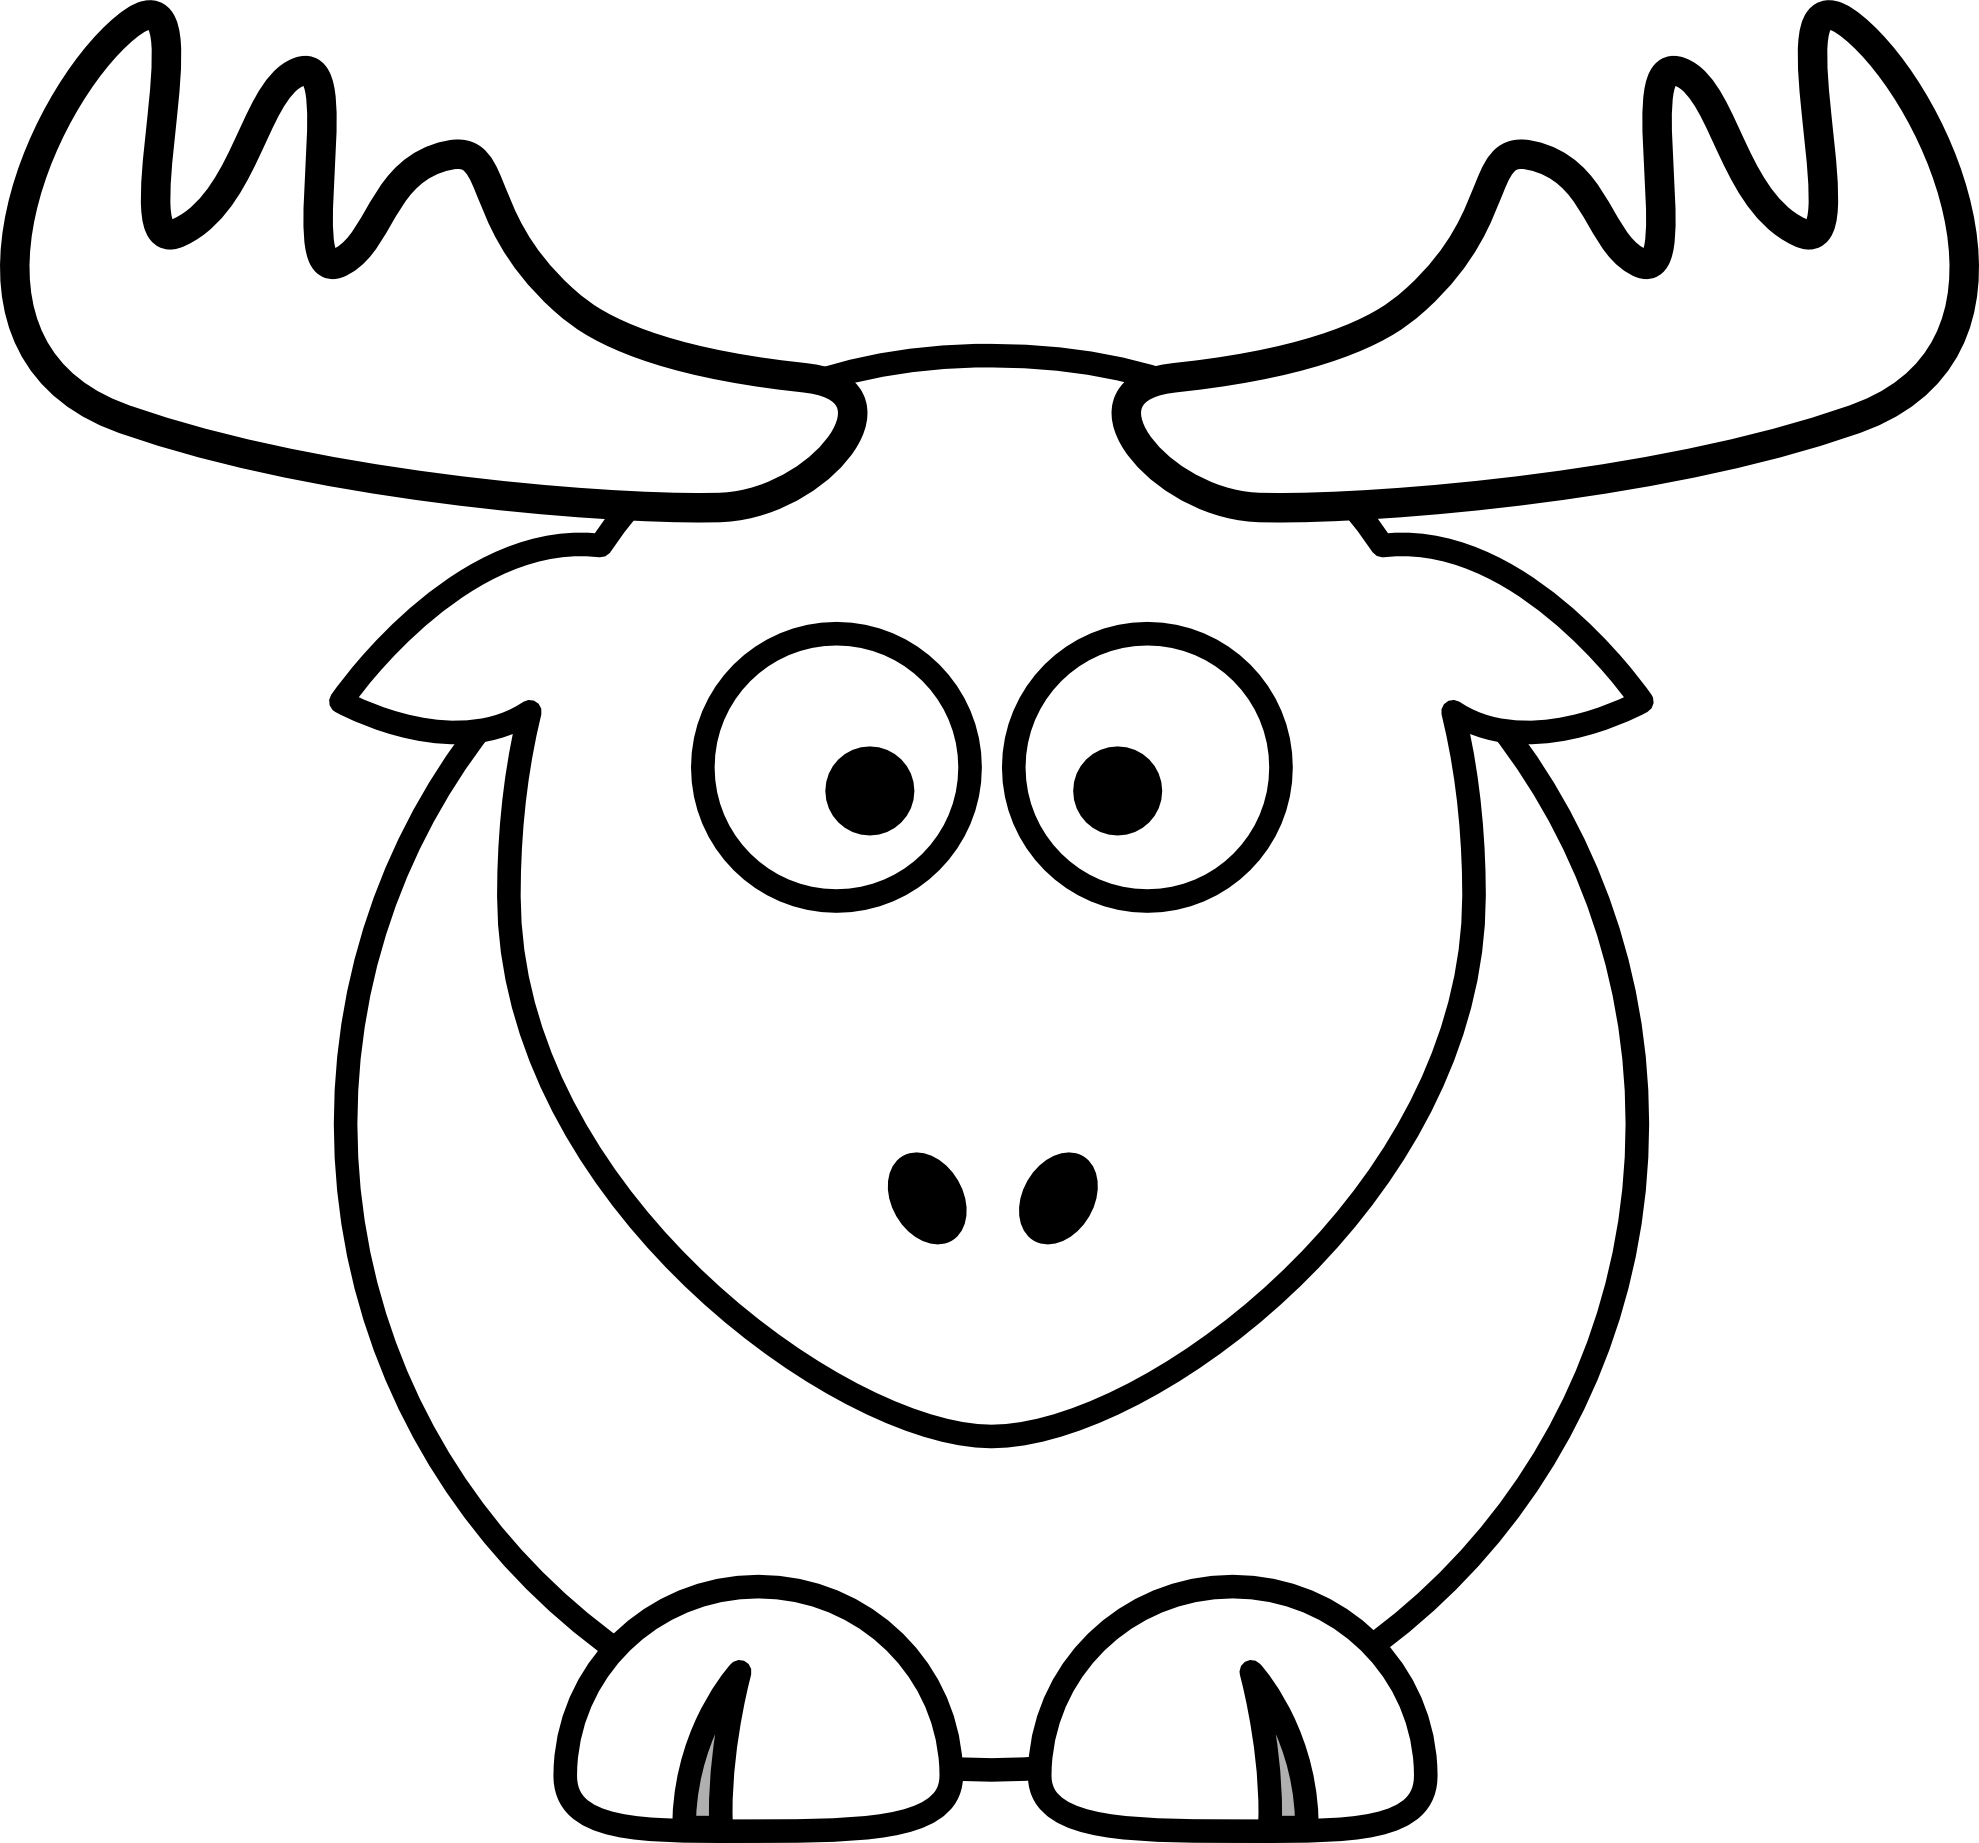 Elk svg #6, Download drawings